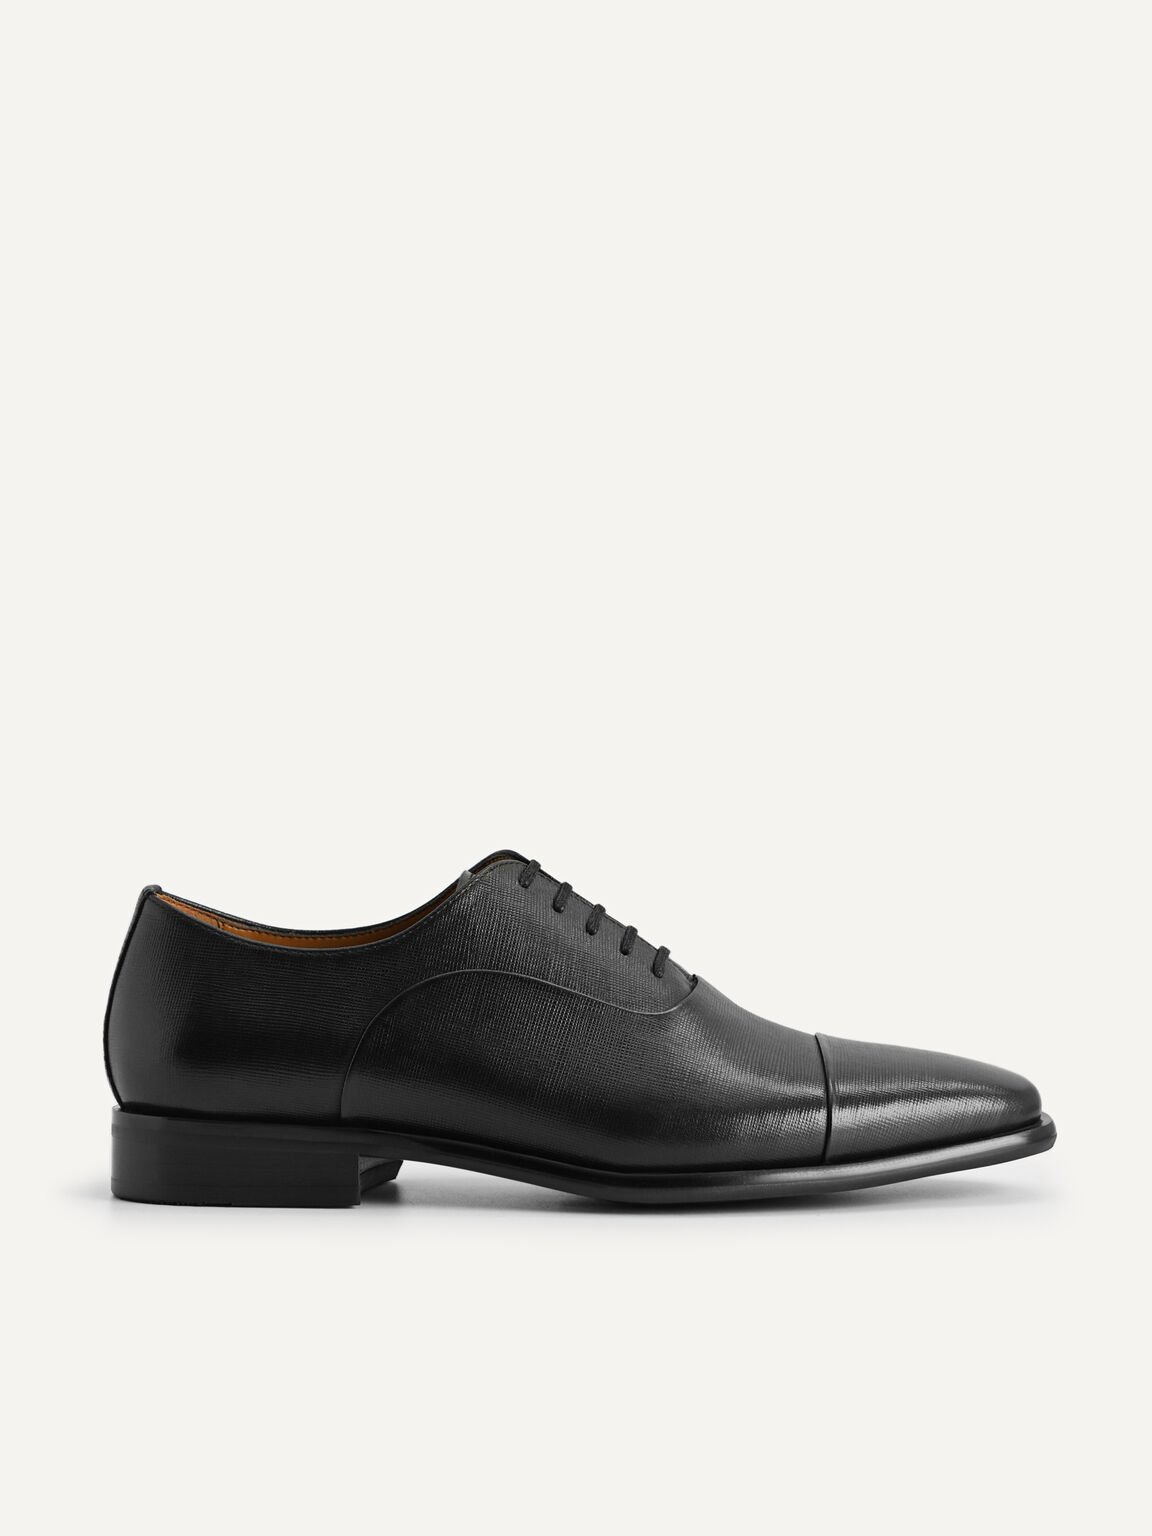 紋理皮革牛津鞋, 黑色, hi-res